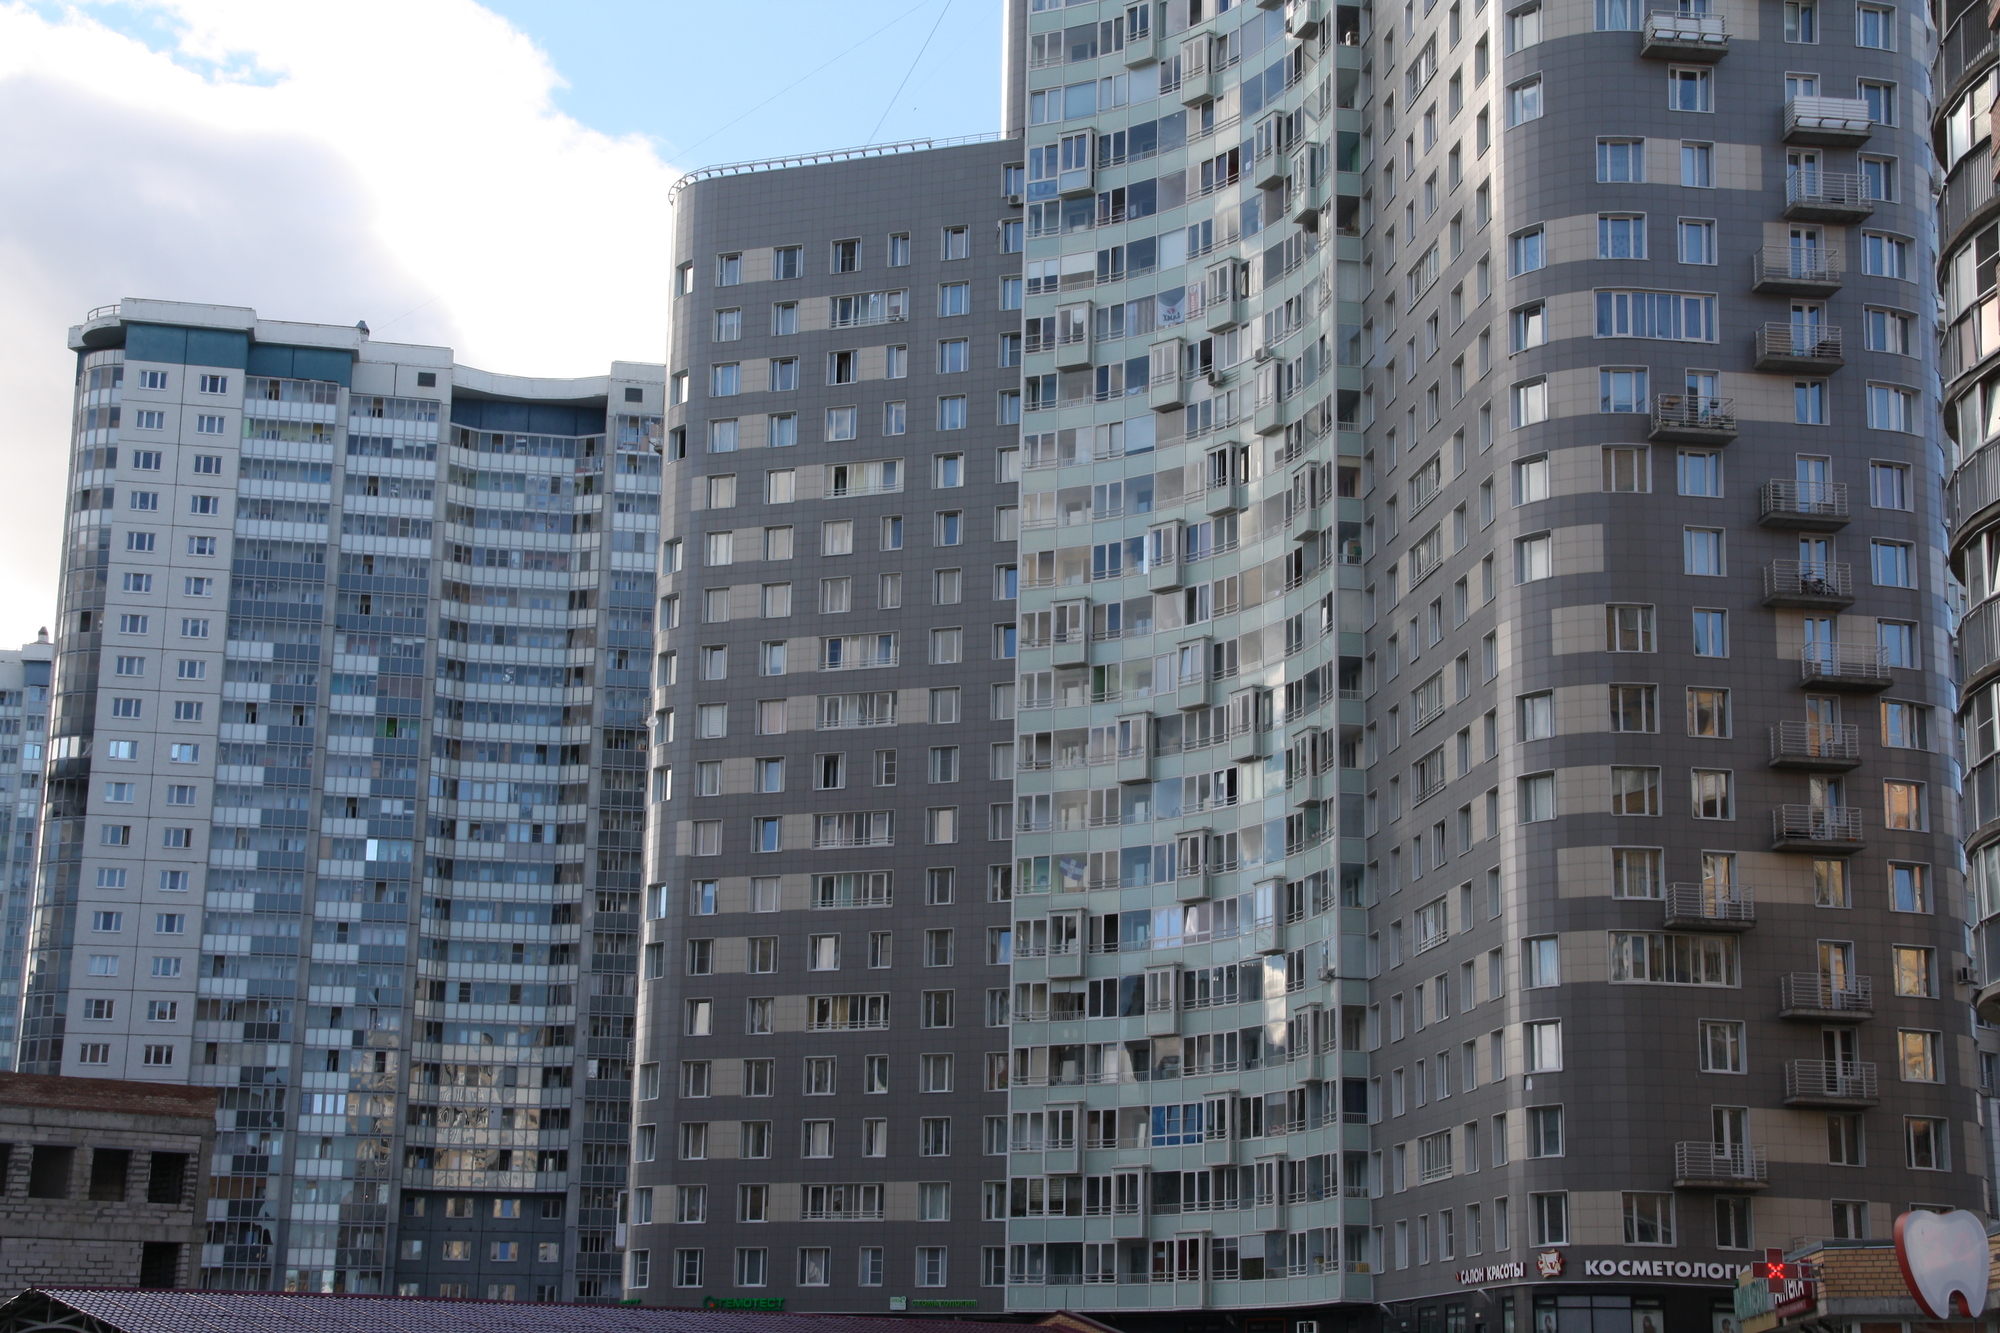 Петербург попал в топ-20 регионов России по ипотеке 